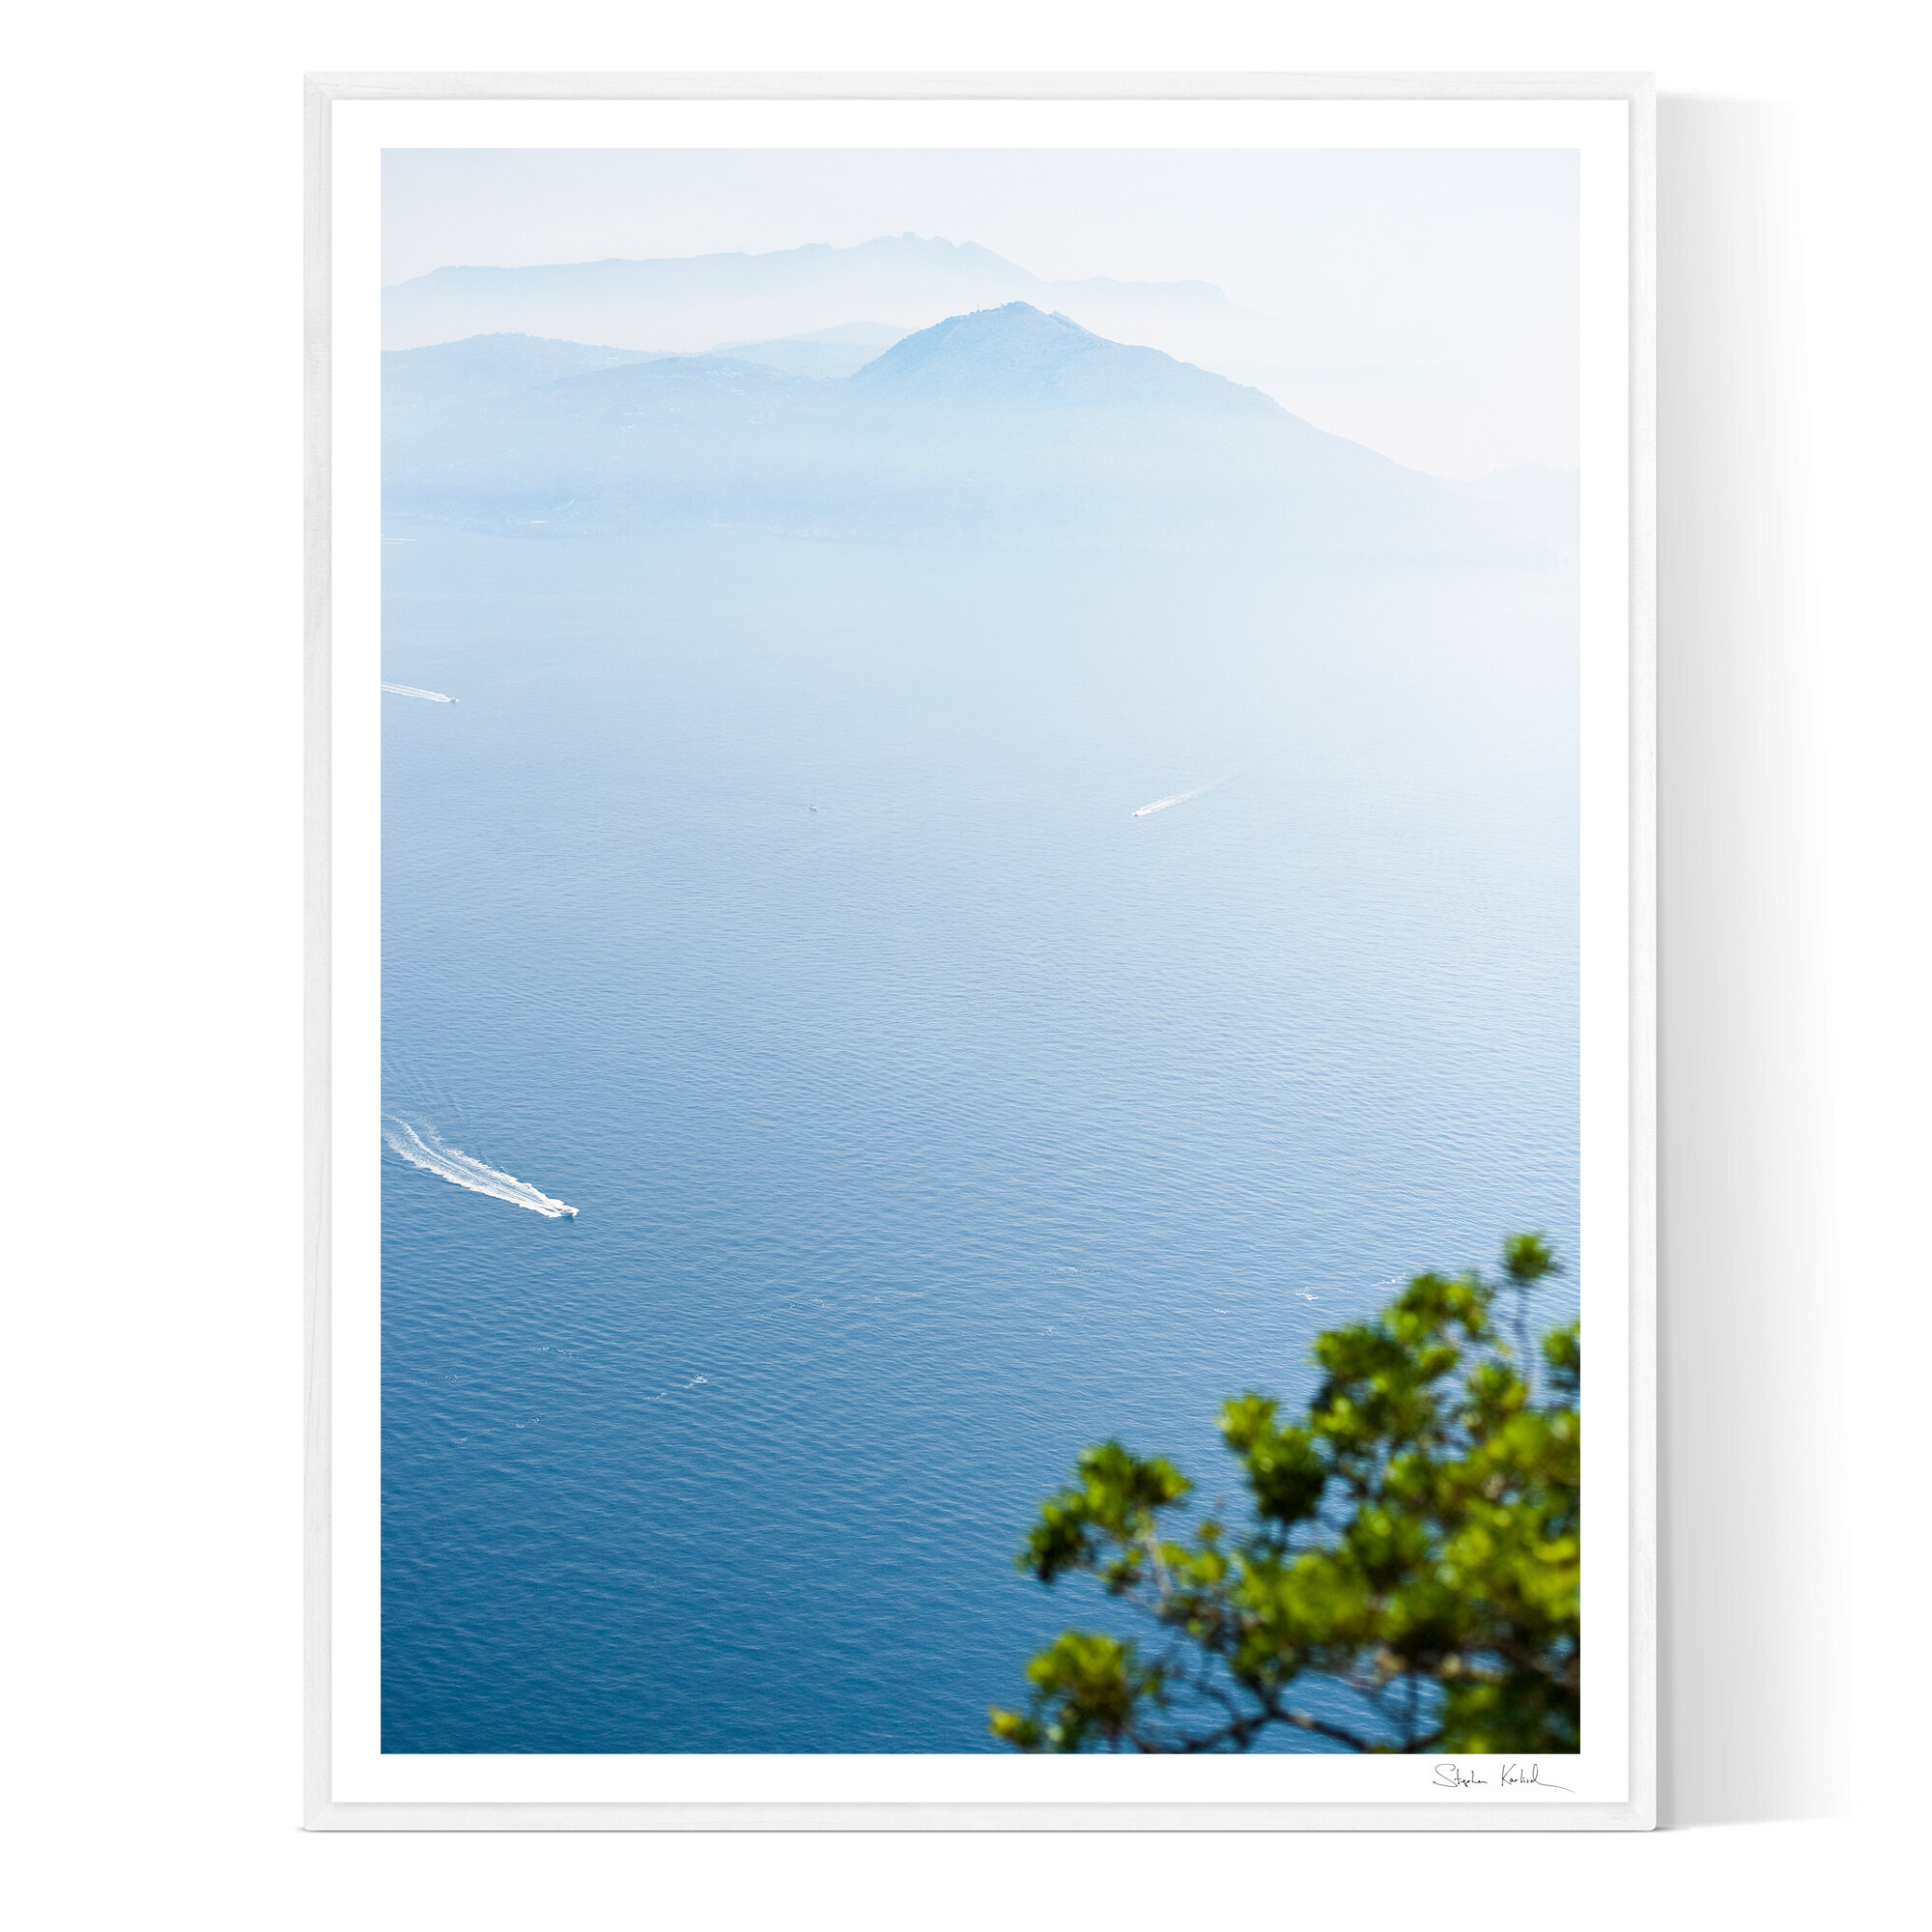 Capri view to Sorrento - Italy